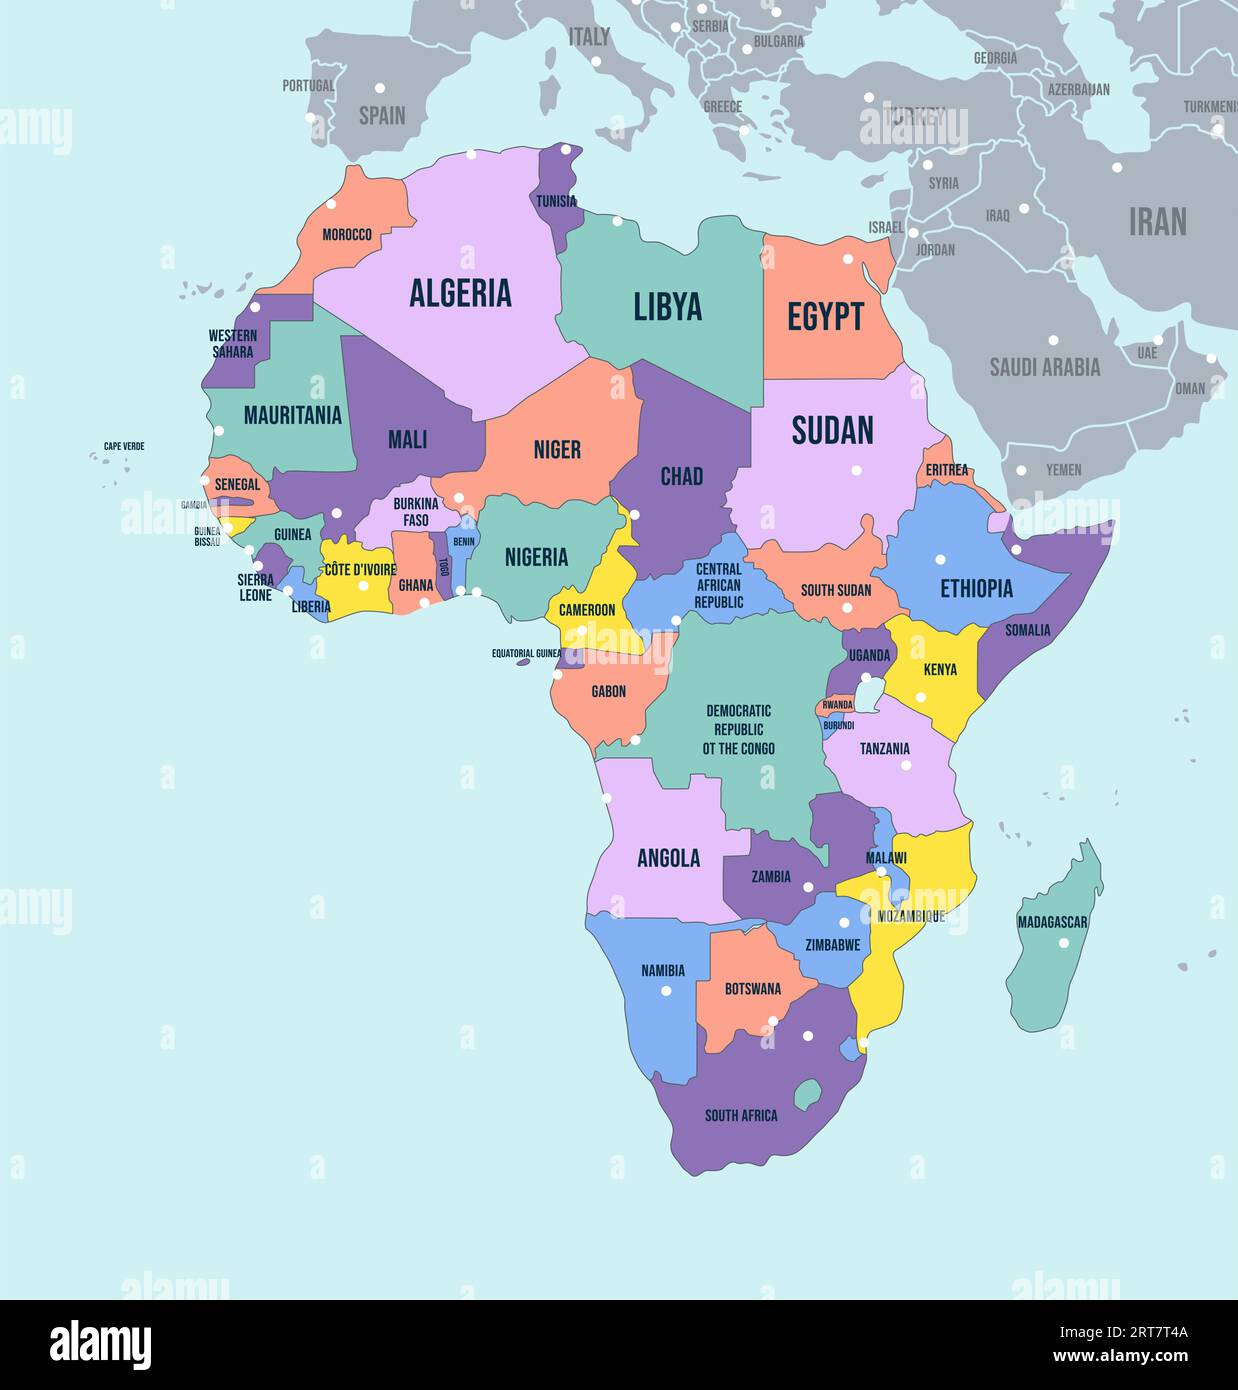 Politische Karte des afrikanischen Kontinents. Vektor-Illustration mit Ländernamen und afrikanischen Grenzen Stock Vektor